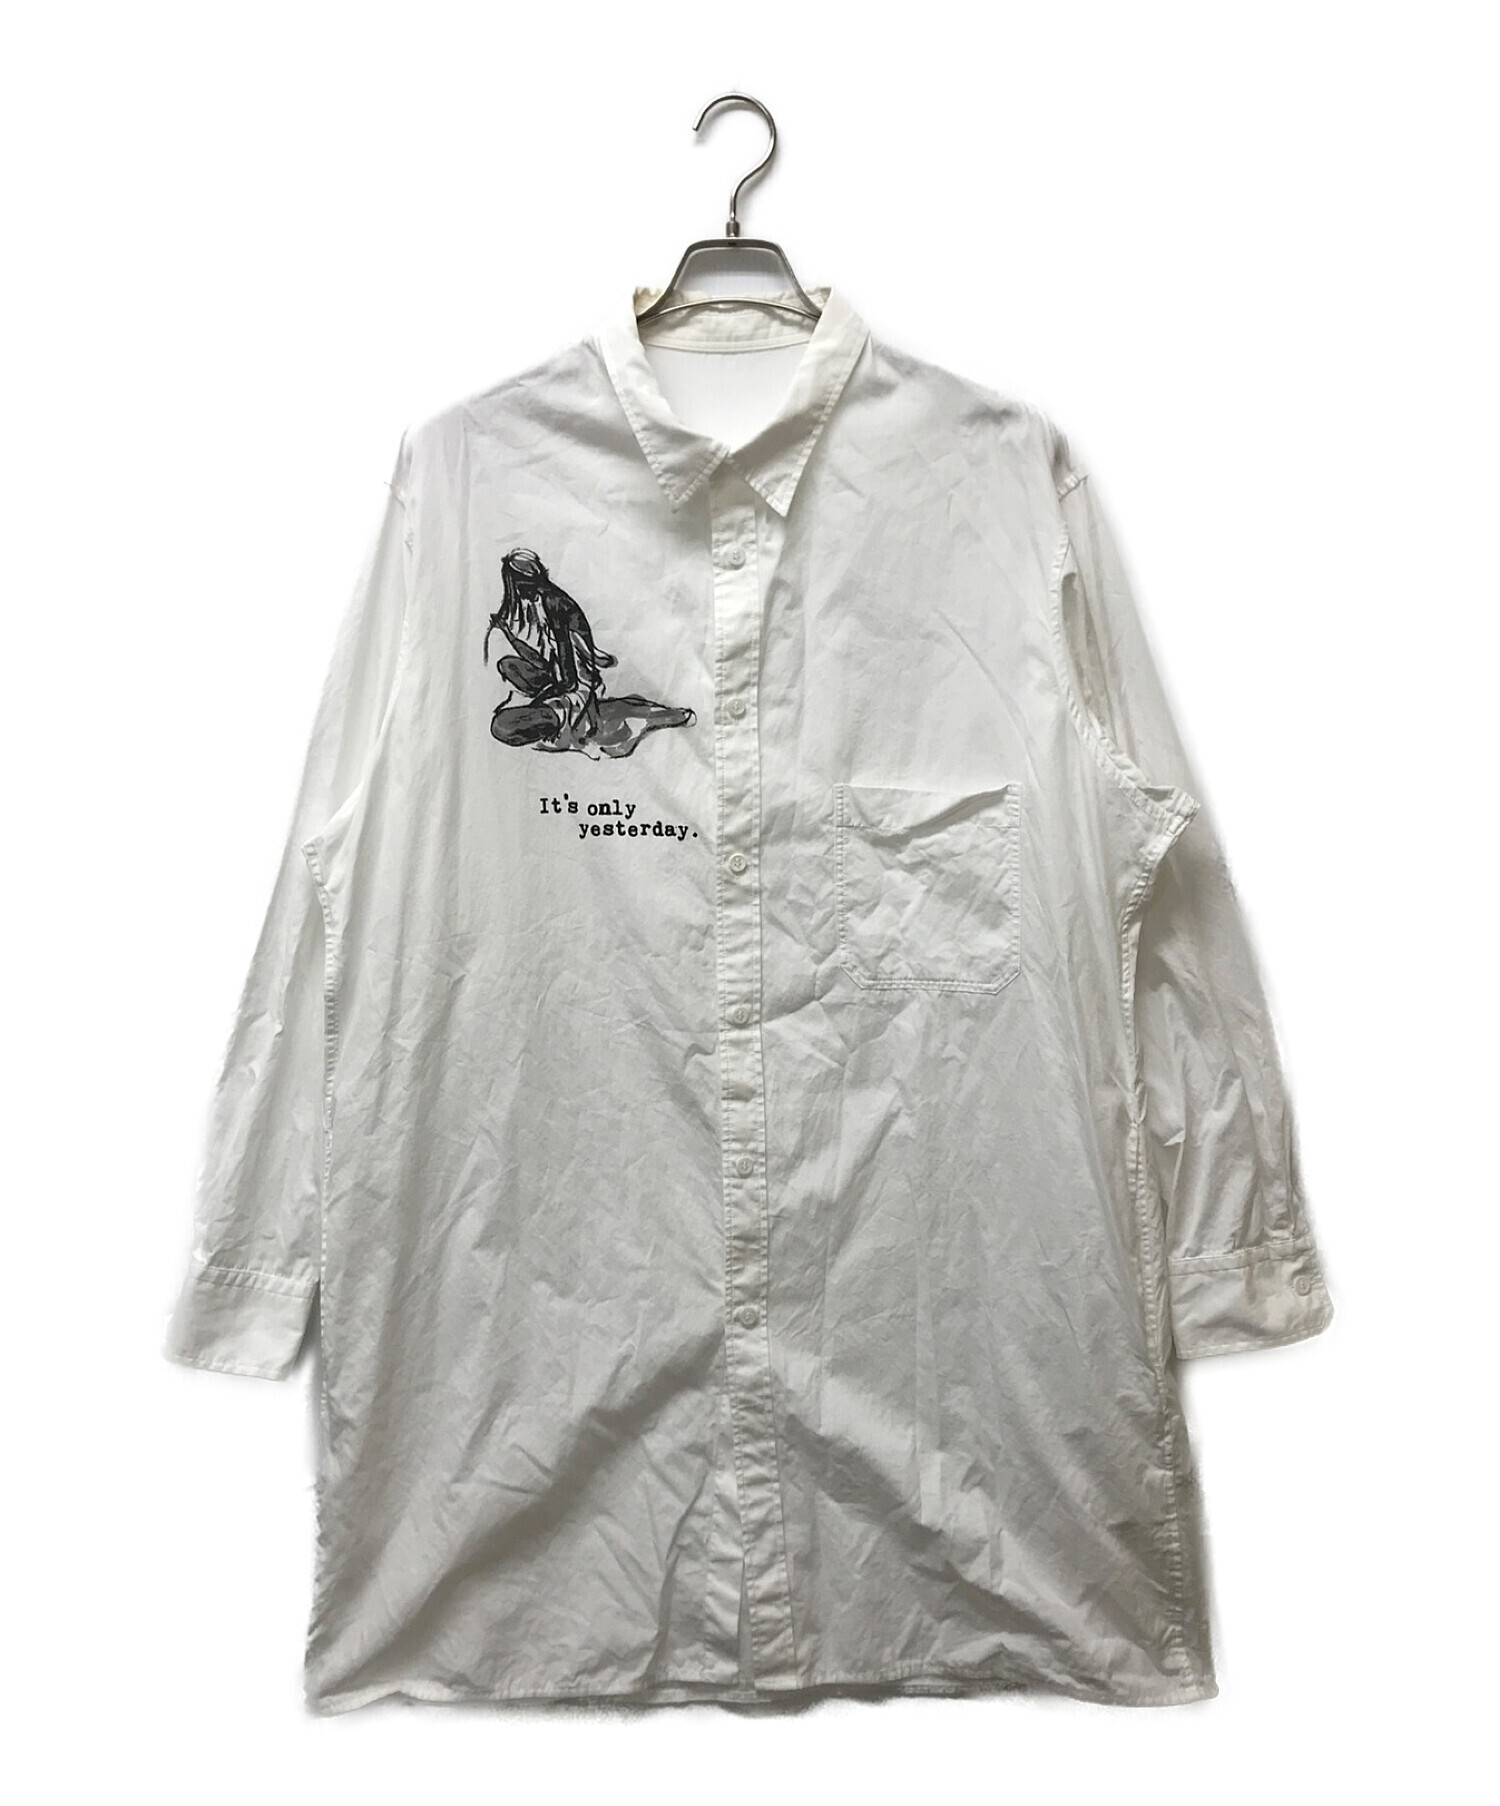 Yohji Yamamoto pour homme (ヨウジヤマモト プールオム) デッサンプリントレギュラーカラーロングシャツ ホワイト サイズ:3